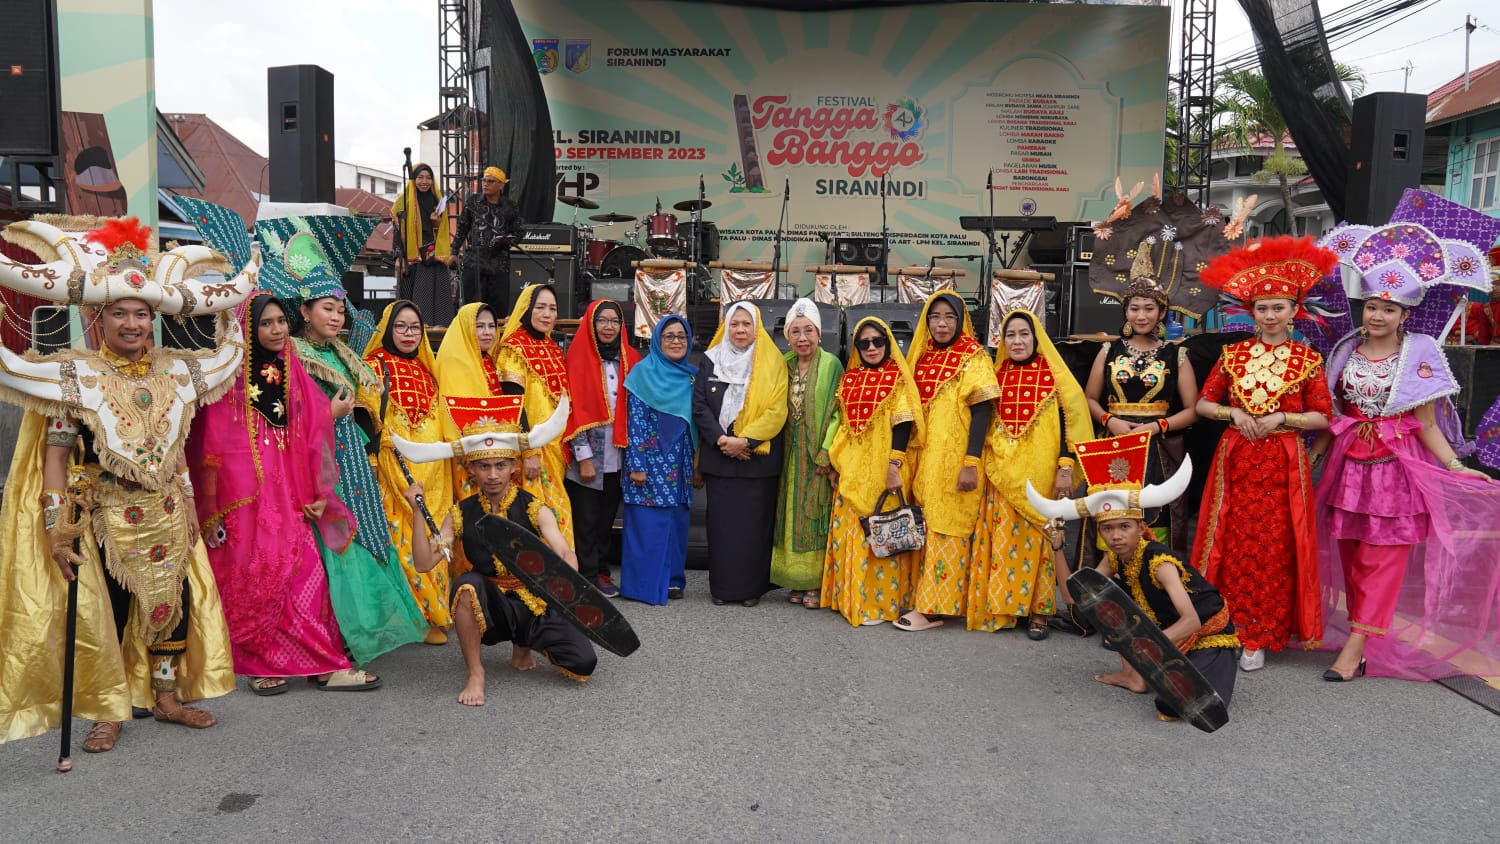 Festival Tangga Banggo ke-4 di Kelurahan Siranindi, Kecamatan Palu Barat, Kota Palu, pada Jumat, 08 September 2023. Foto: Istimewa